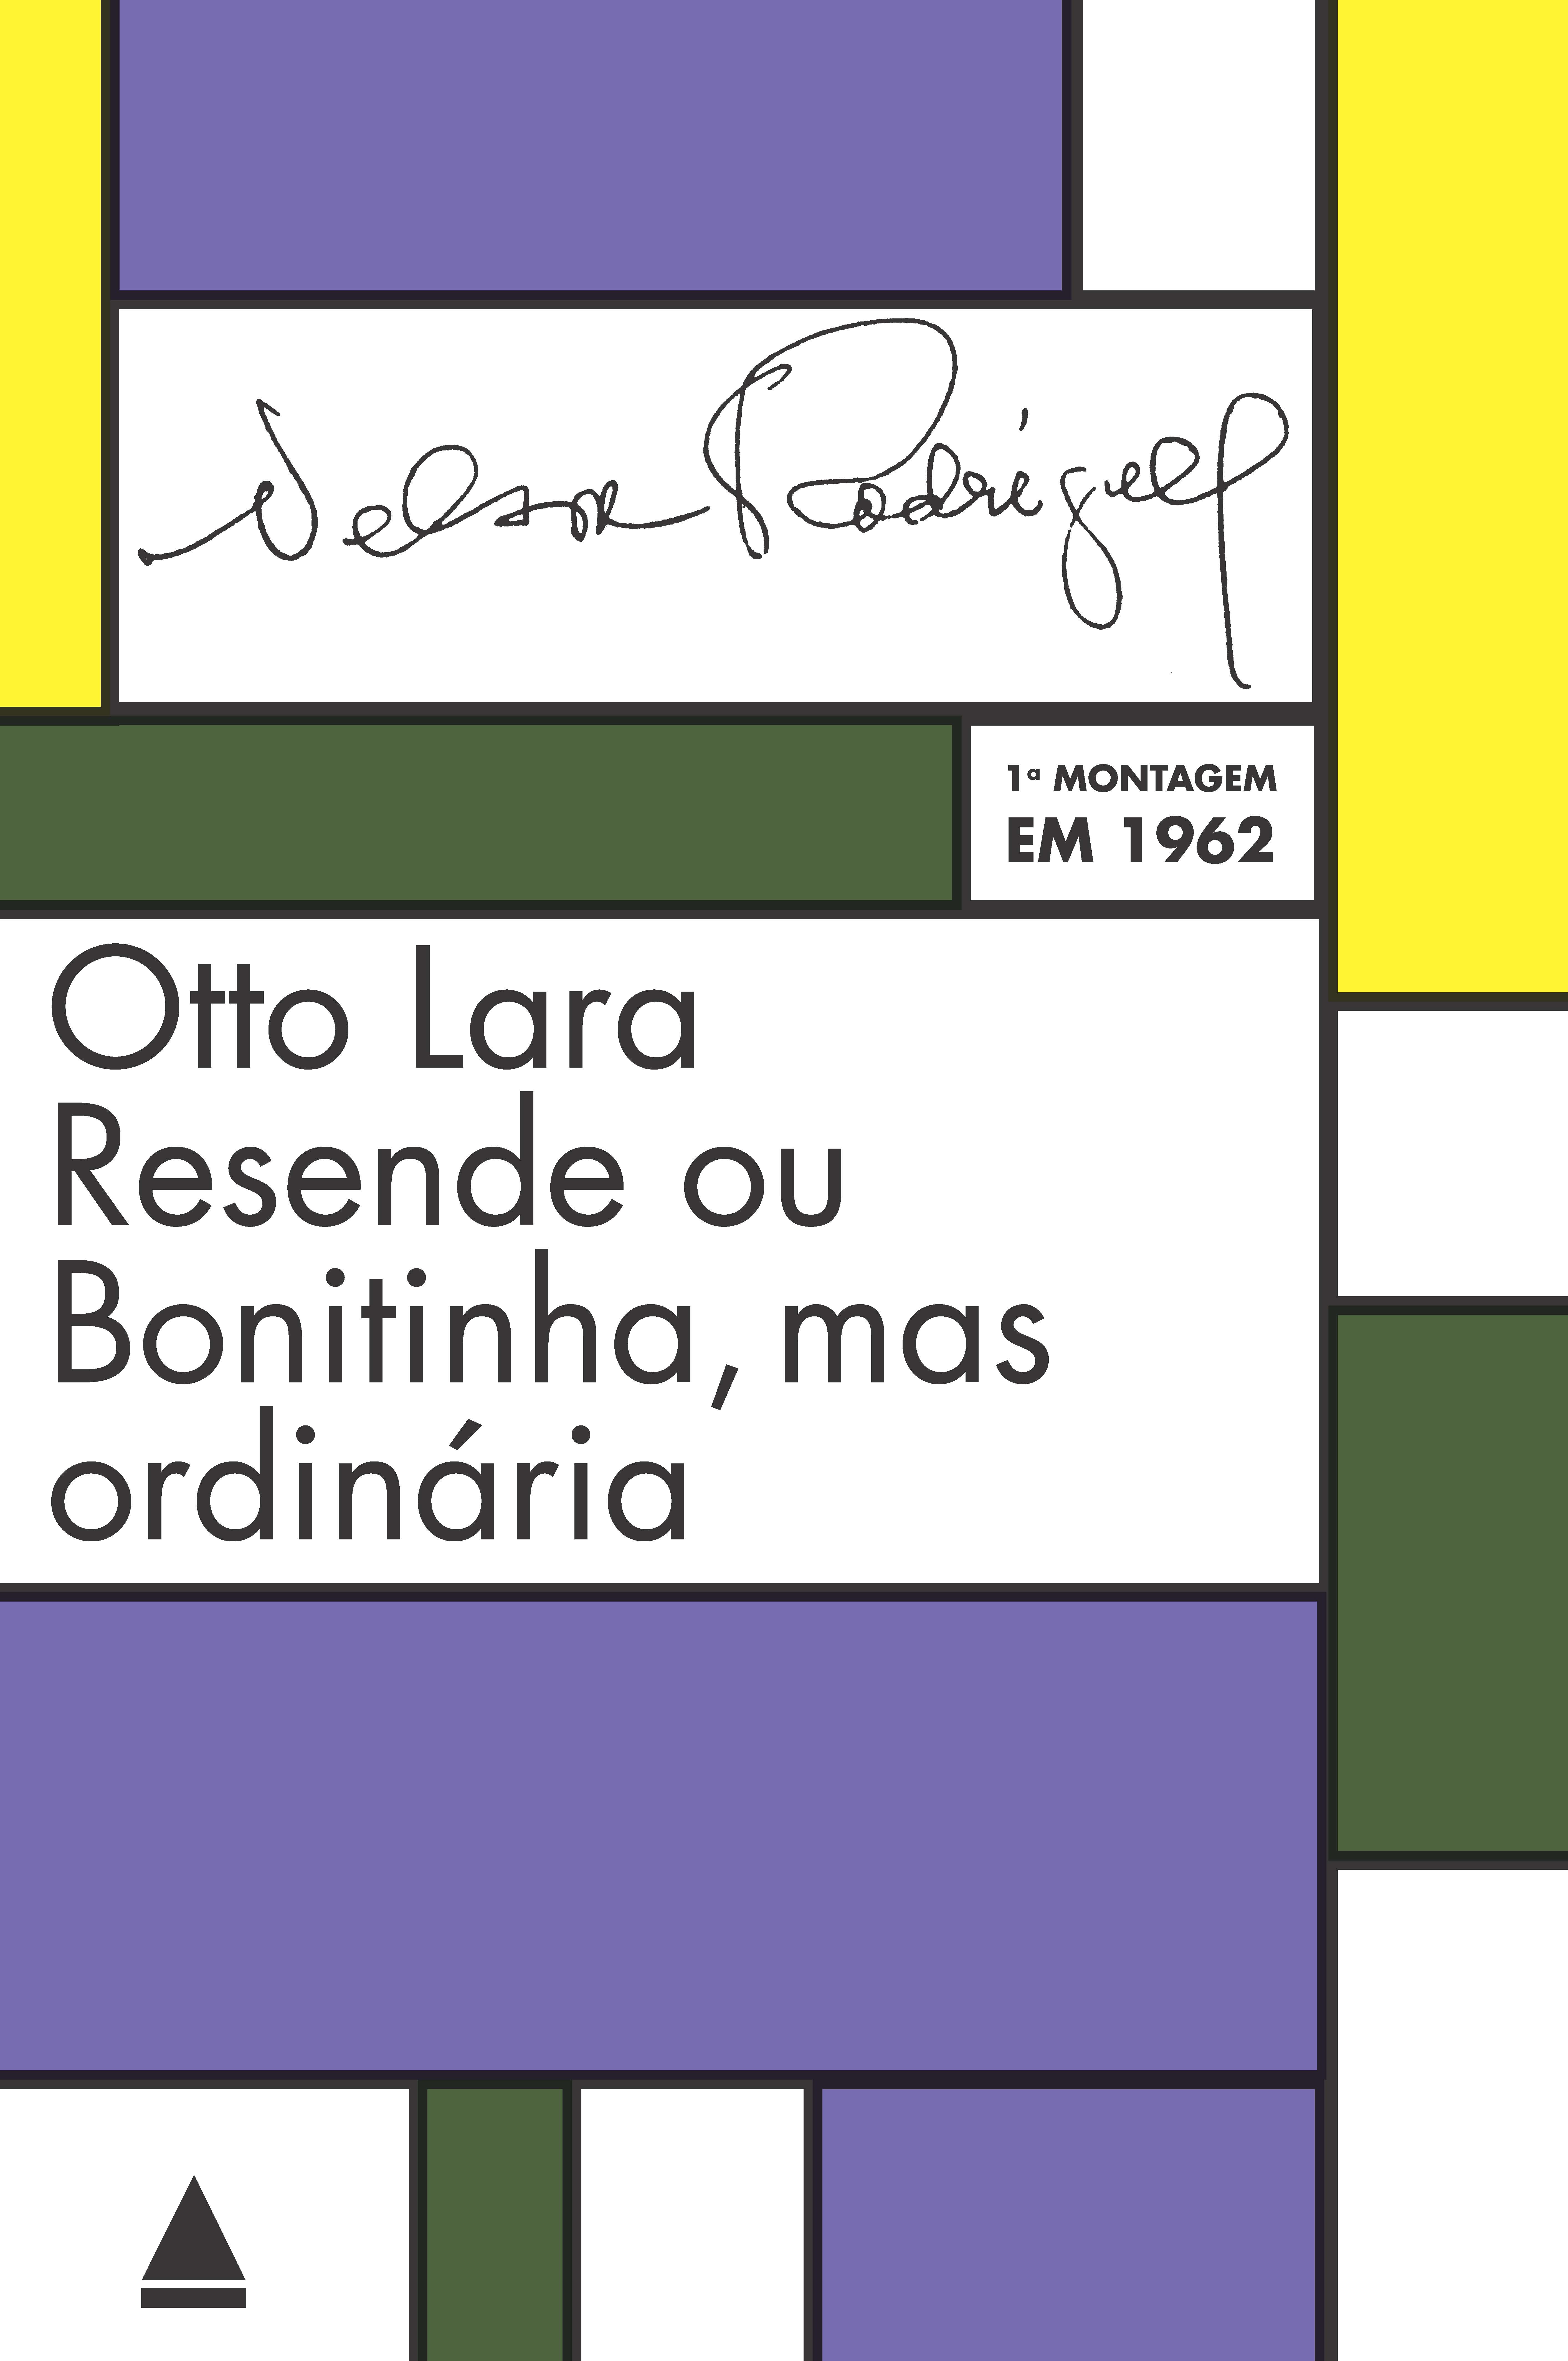 Otto Lara Resende ou Bonitinha, mas ordinária – 1962